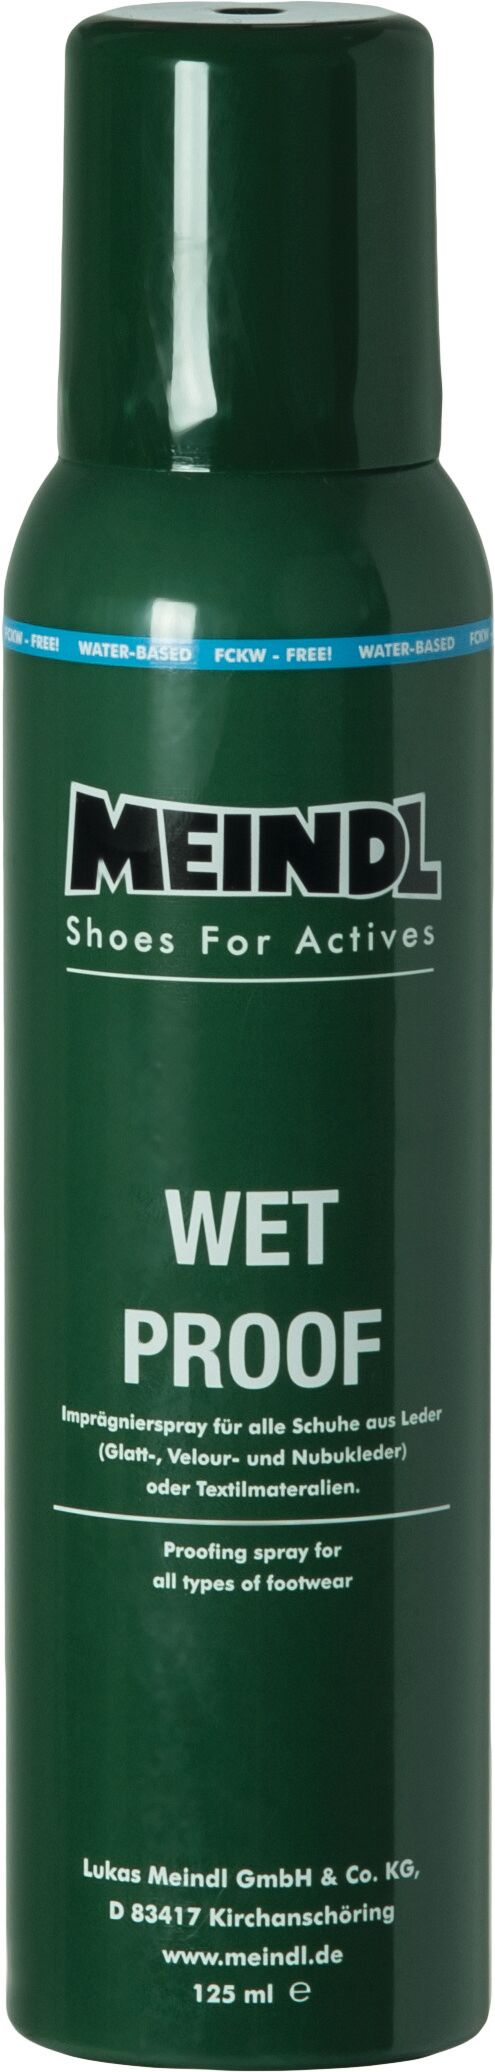 Meindl - Wet-Proof - Cuidado del calzado